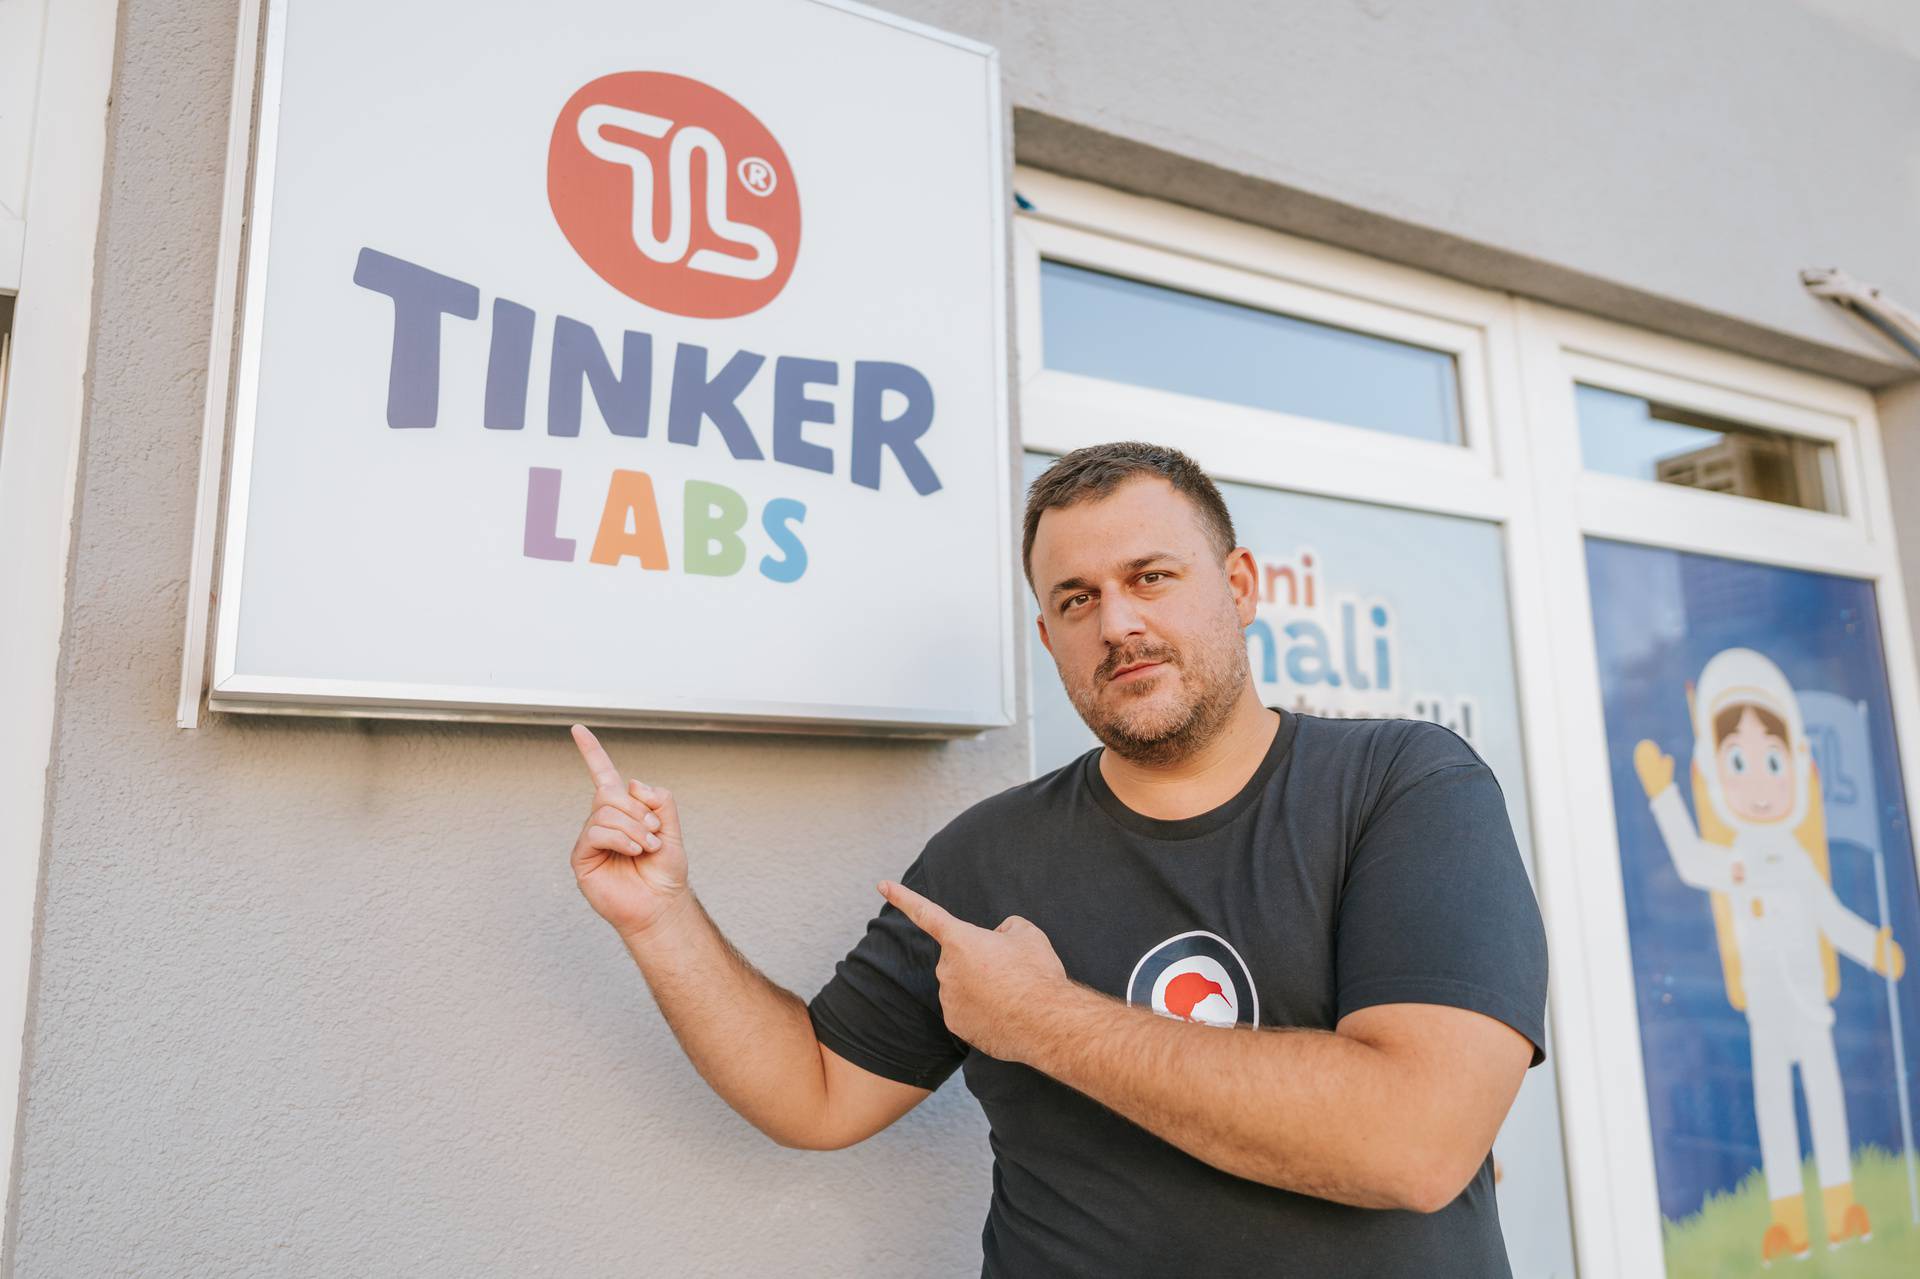 Tinkerastičan kviz s Deanom Kotigom samo u Tinker Labs-u!